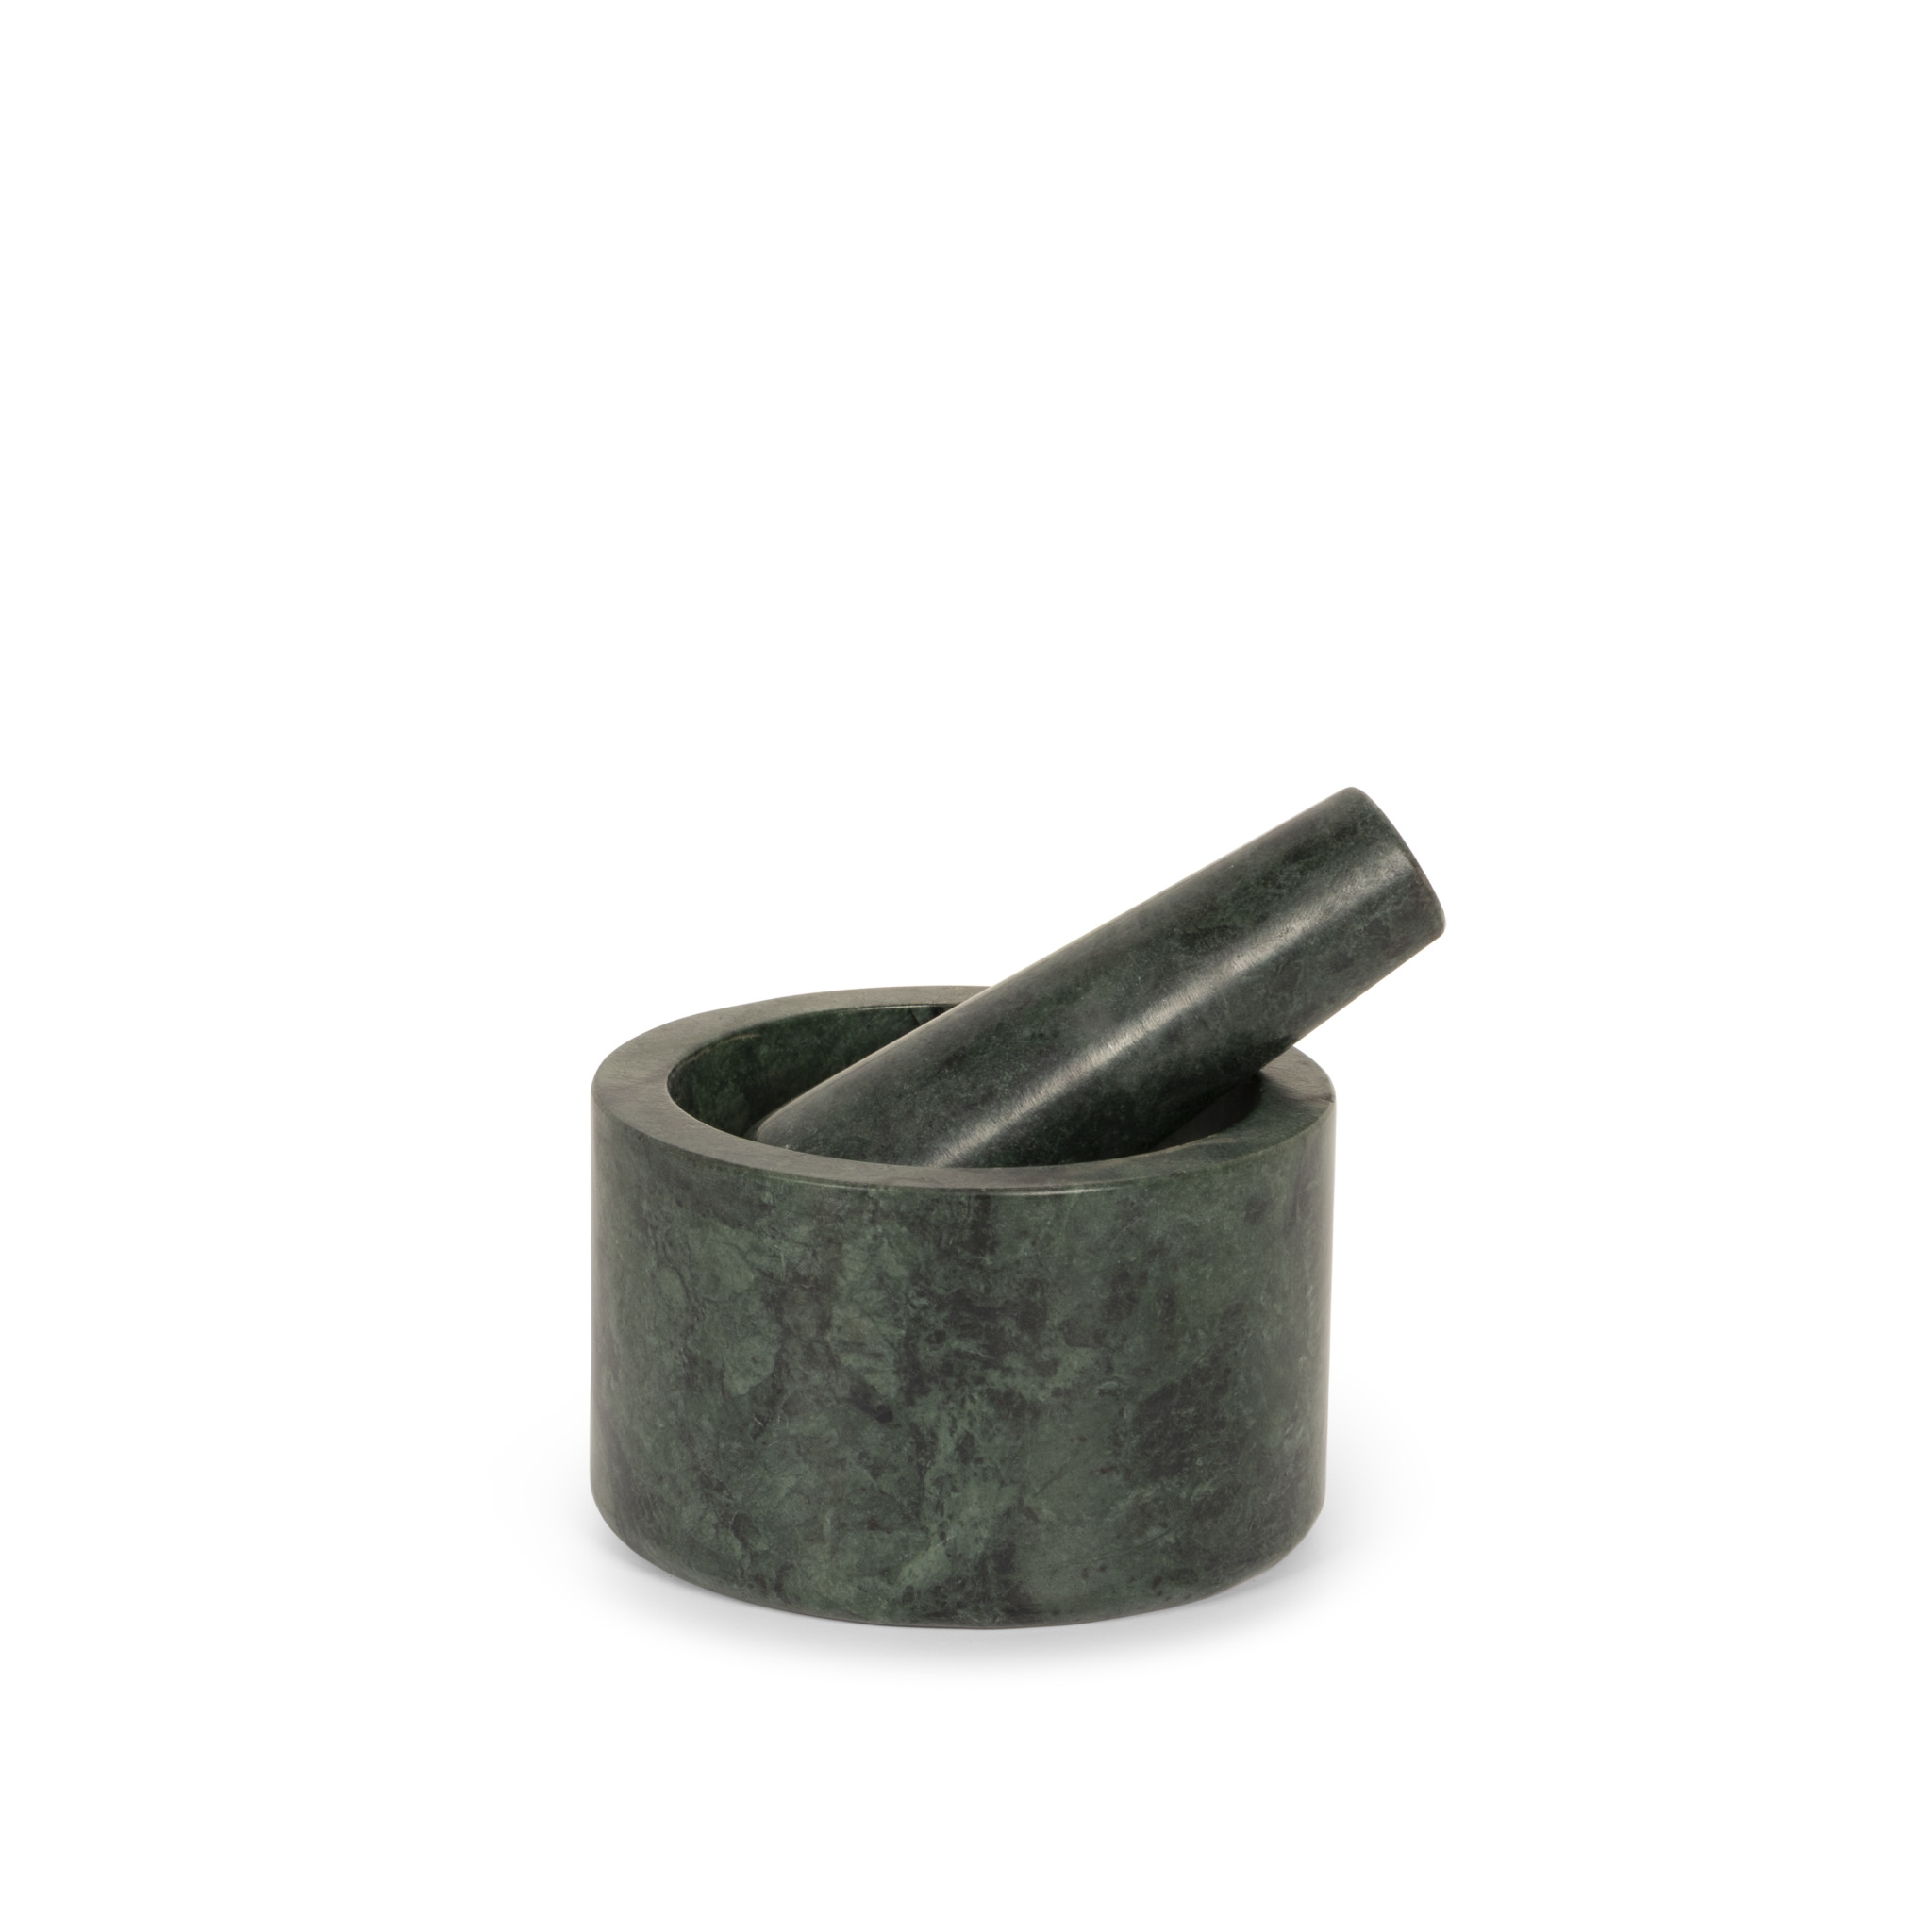 Green marble mortar en pestle